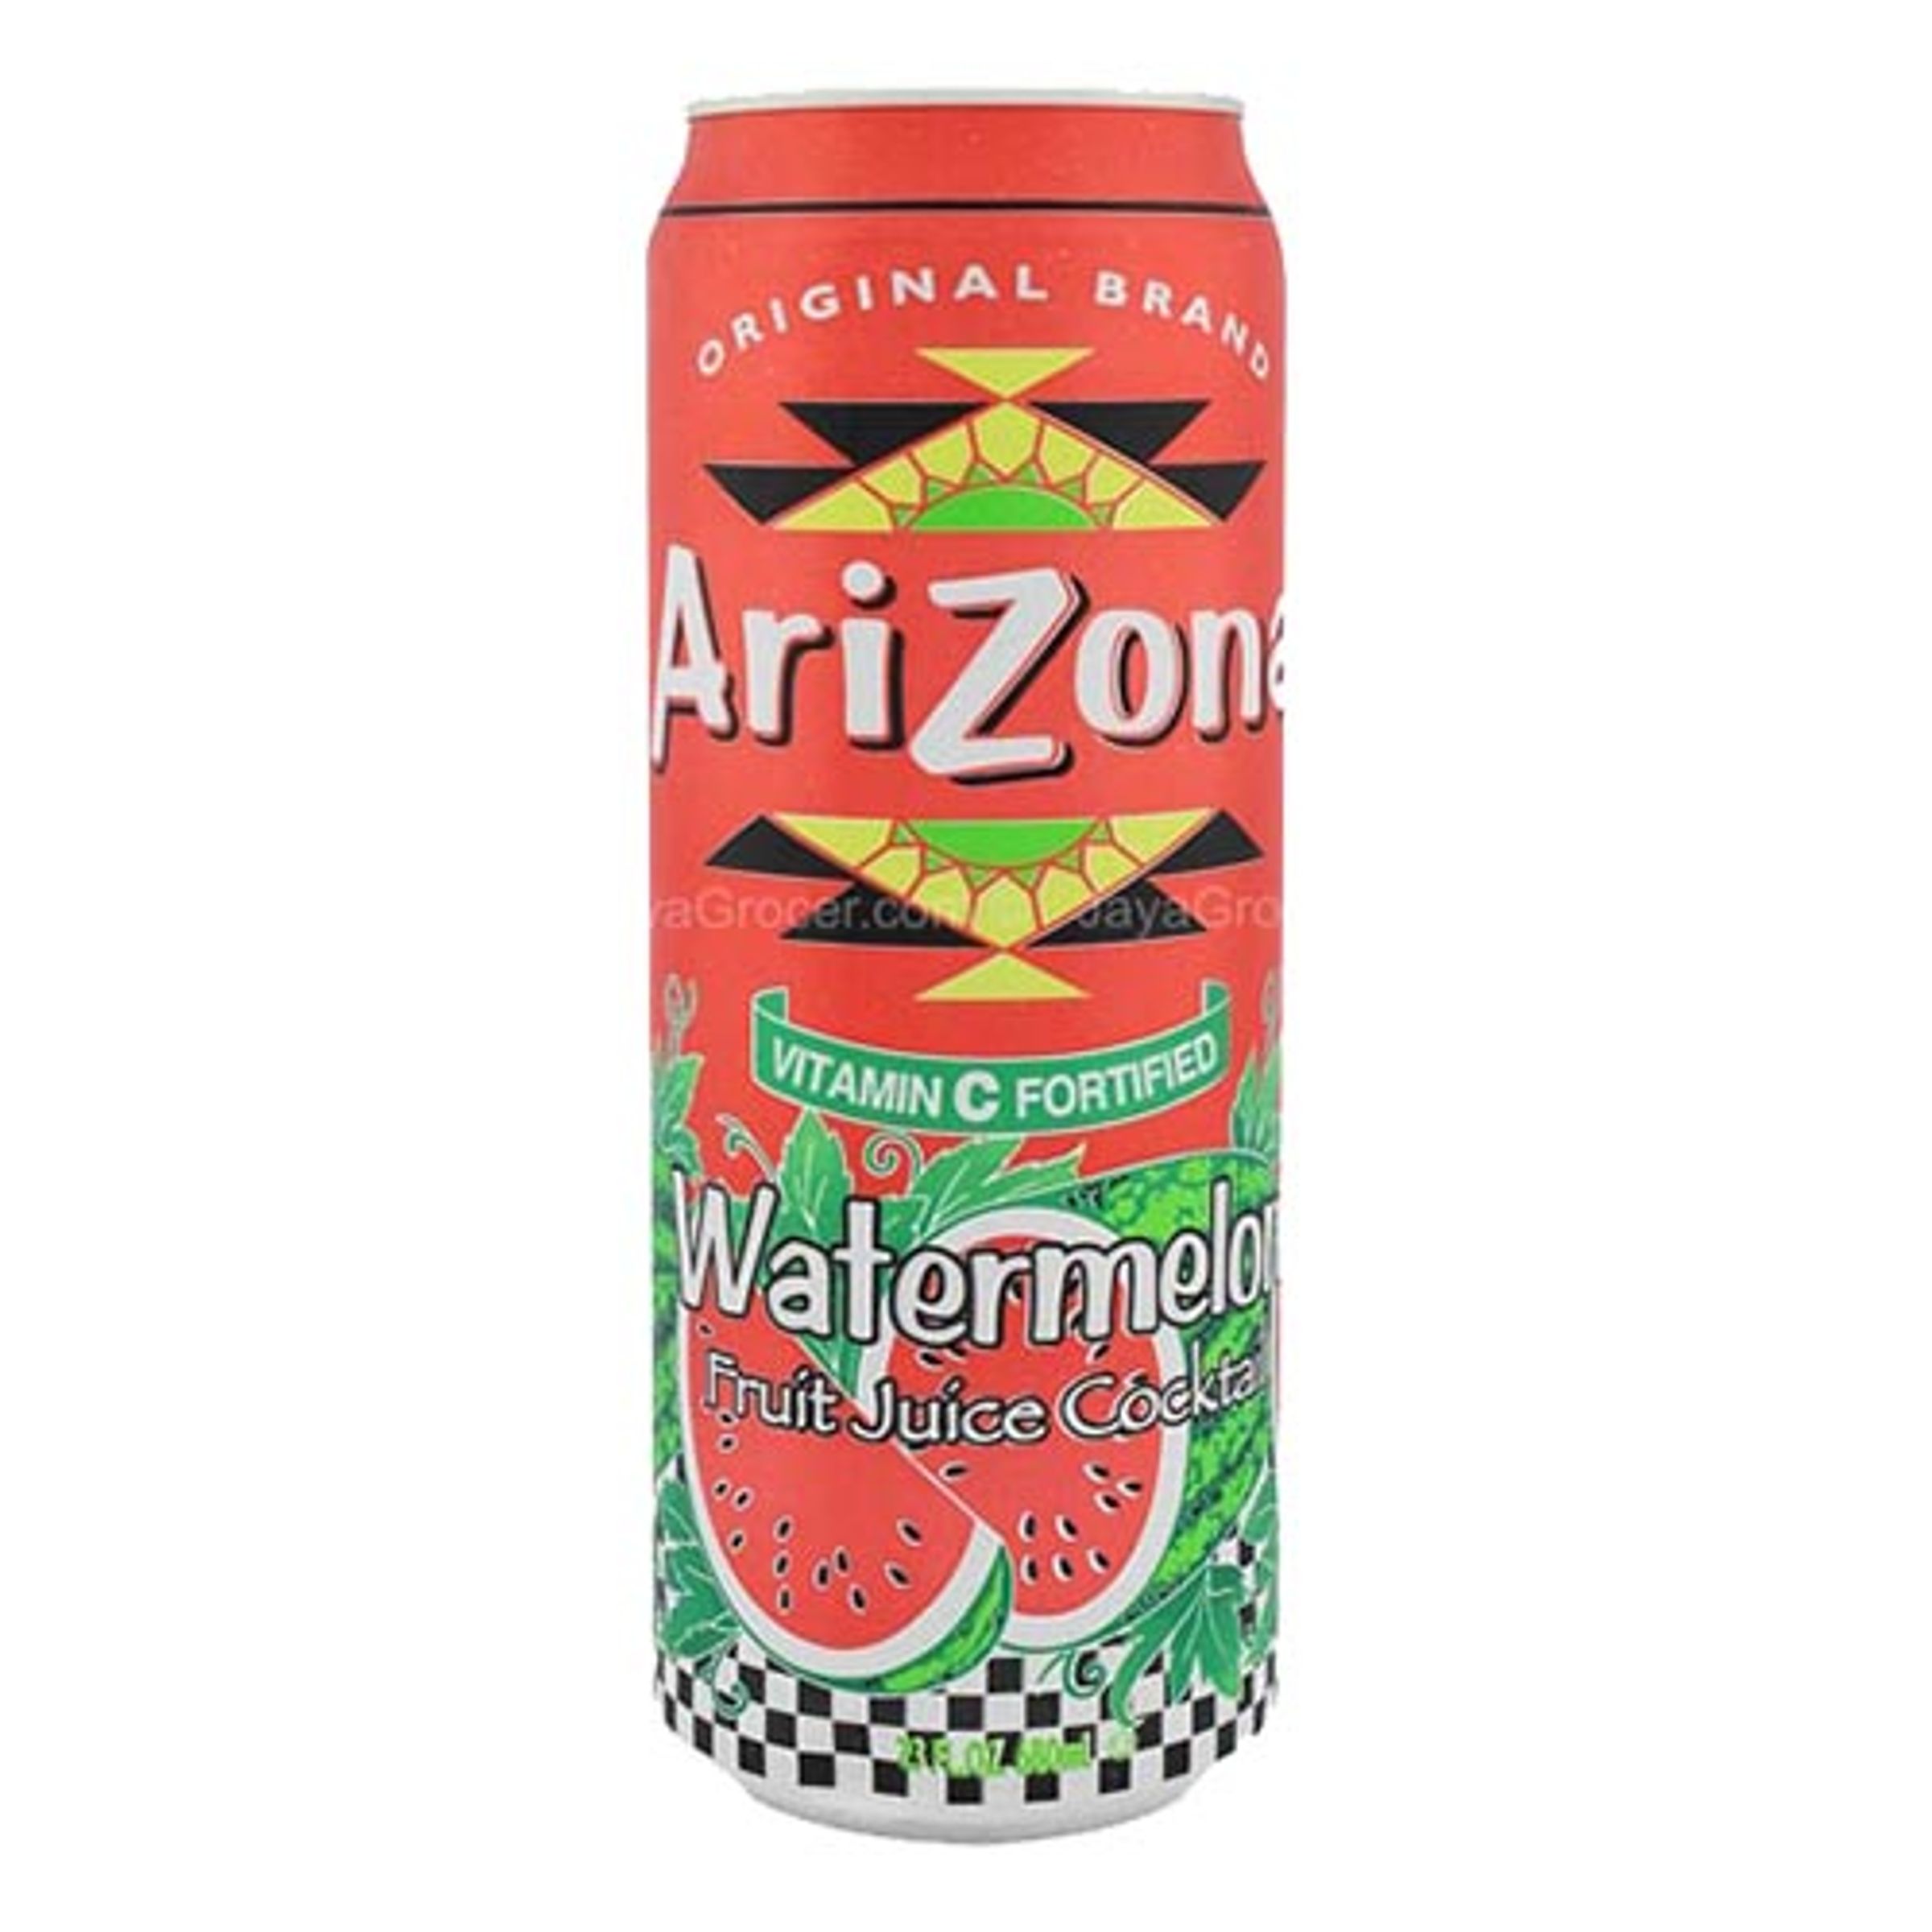 Arizona Watermelon - 680 ml